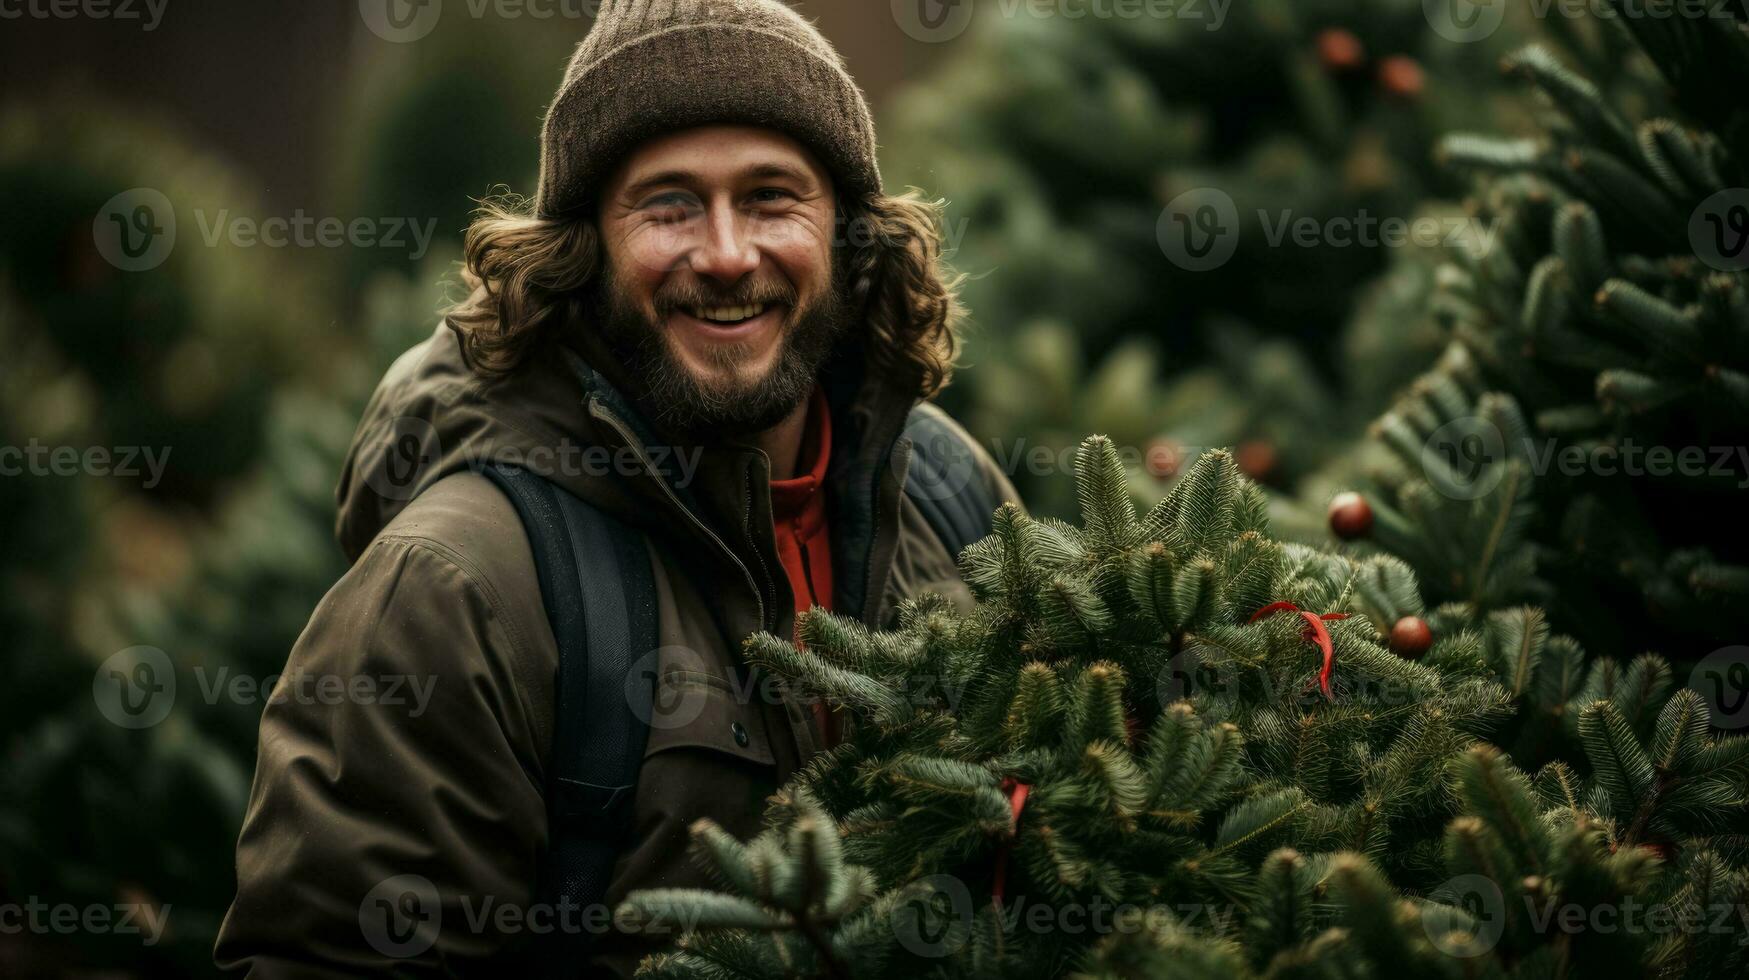 välja en lokalt vuxen träd för en Mer hållbar jul firande foto